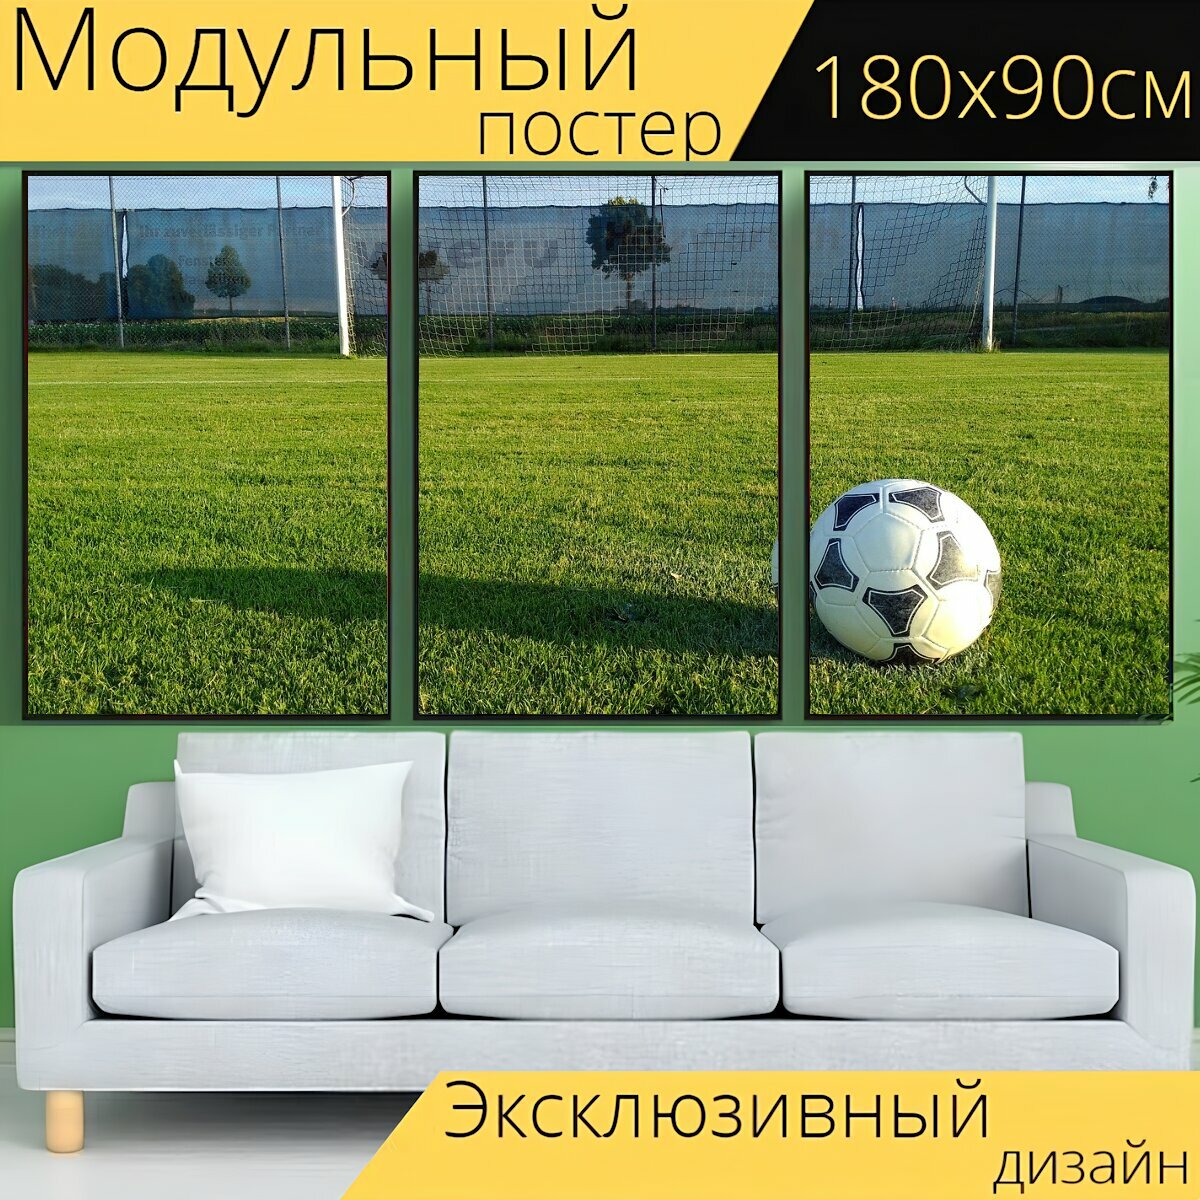 Модульный постер "Цель, мяч, футбол" 180 x 90 см. для интерьера